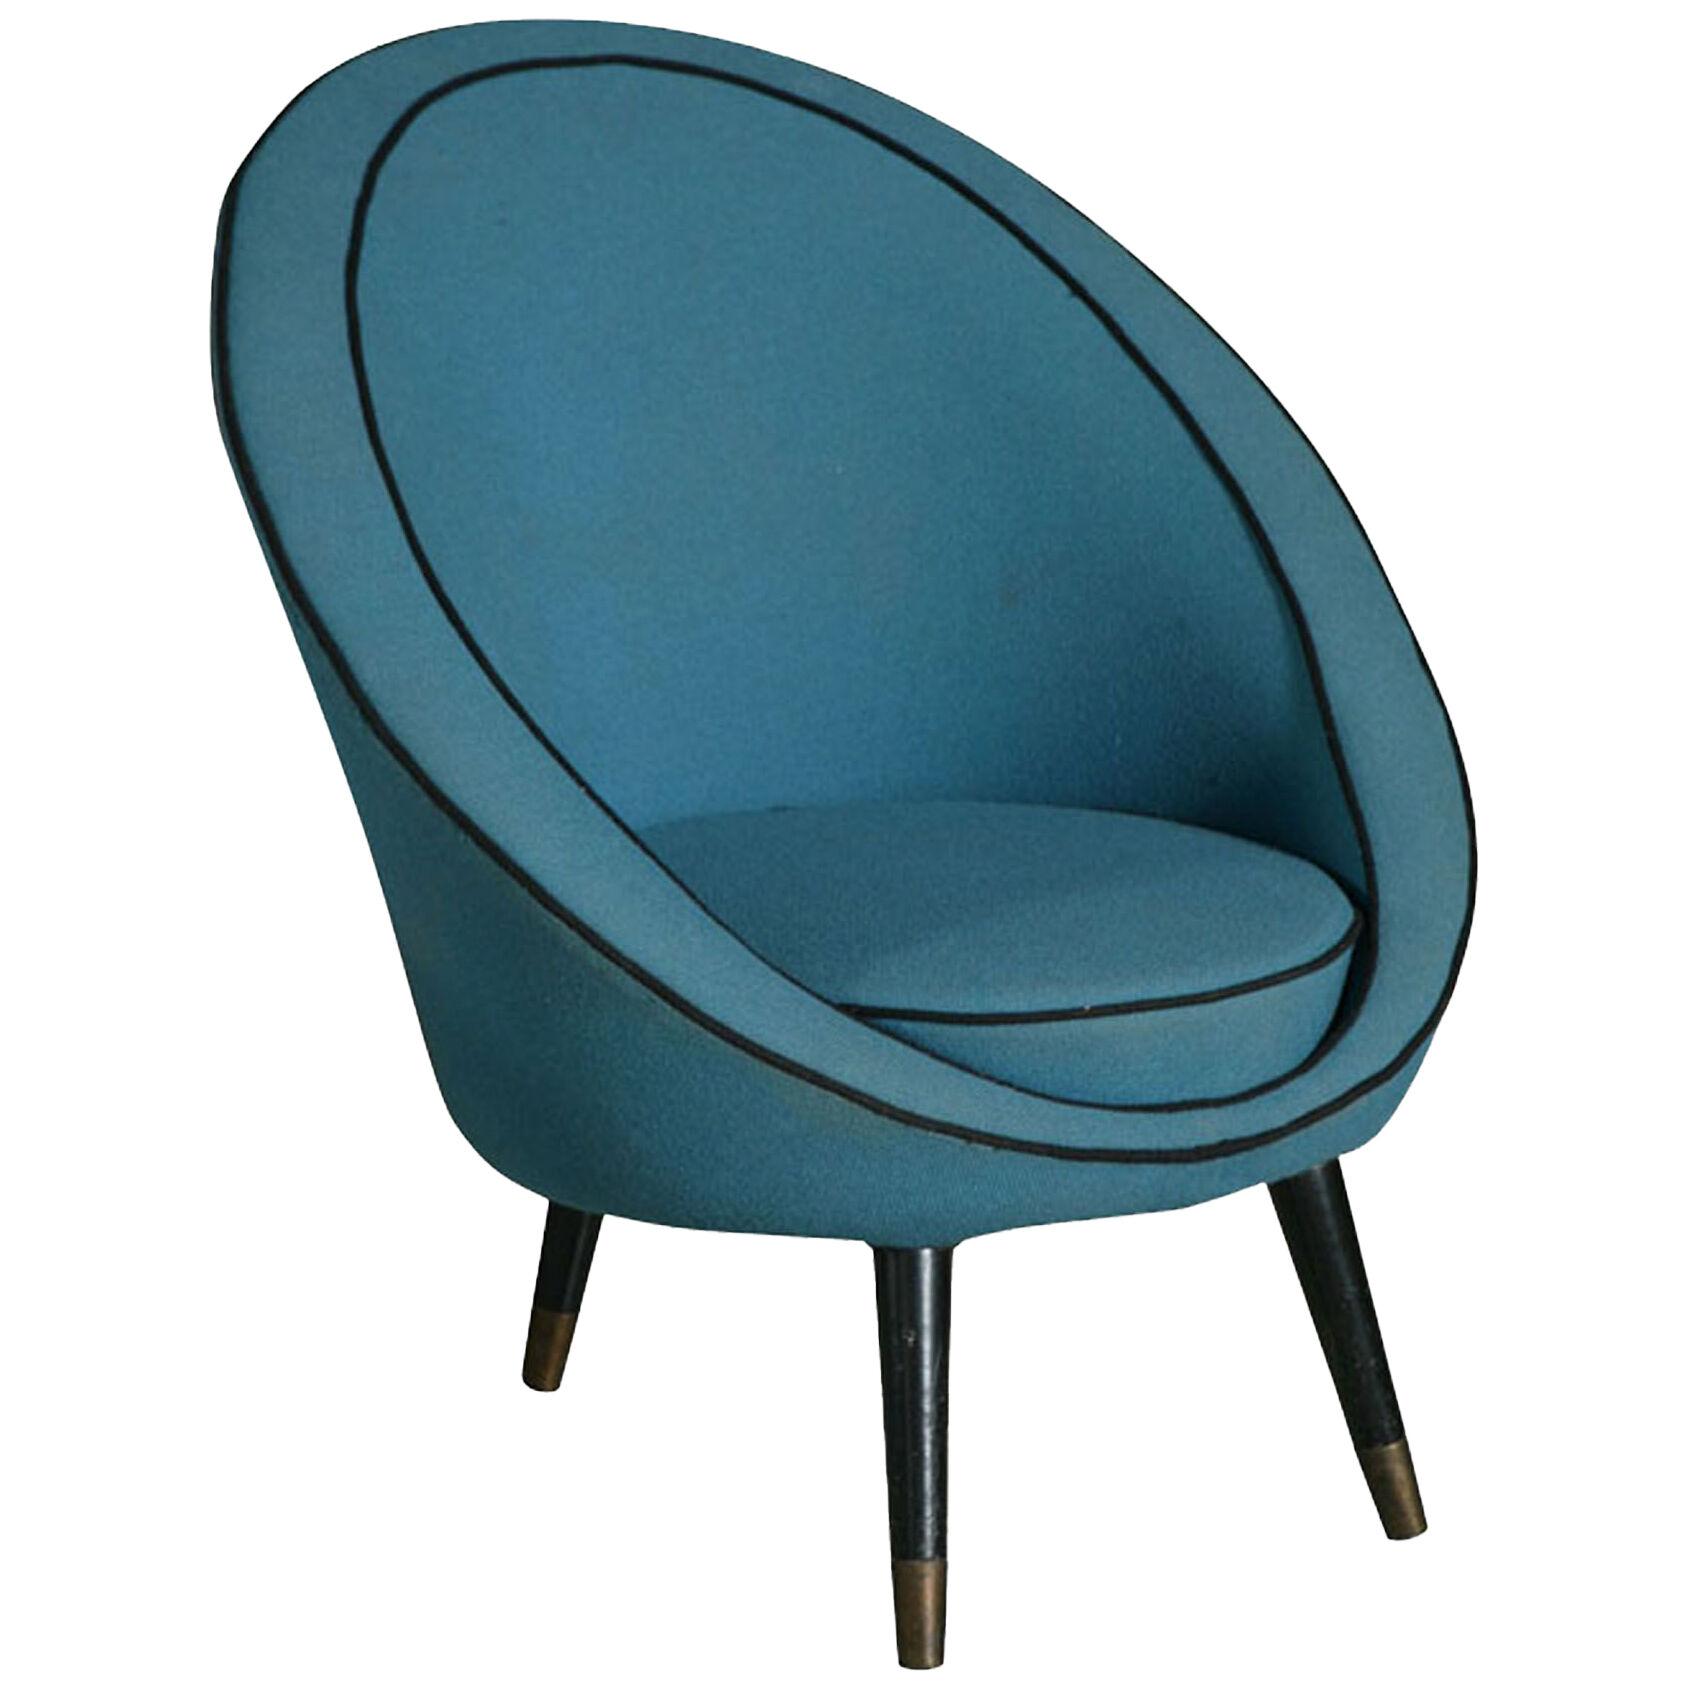 Italian Modern Chair by Ico Parisi